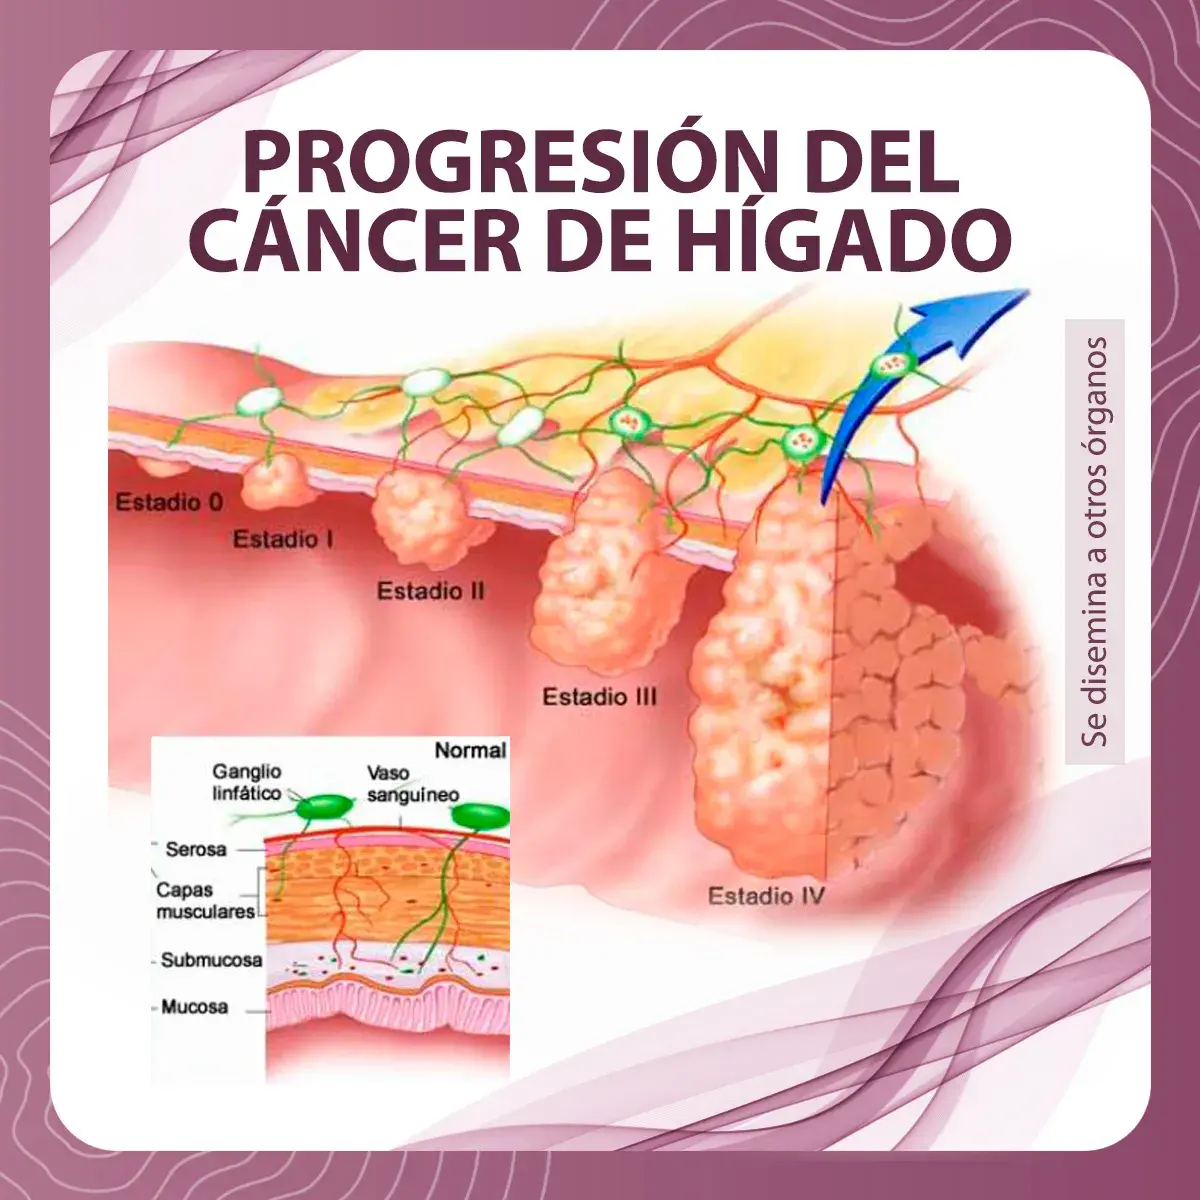 Progresión de los estadios del cáncer de hígado. (Estadio 0, I, II, III, IV)